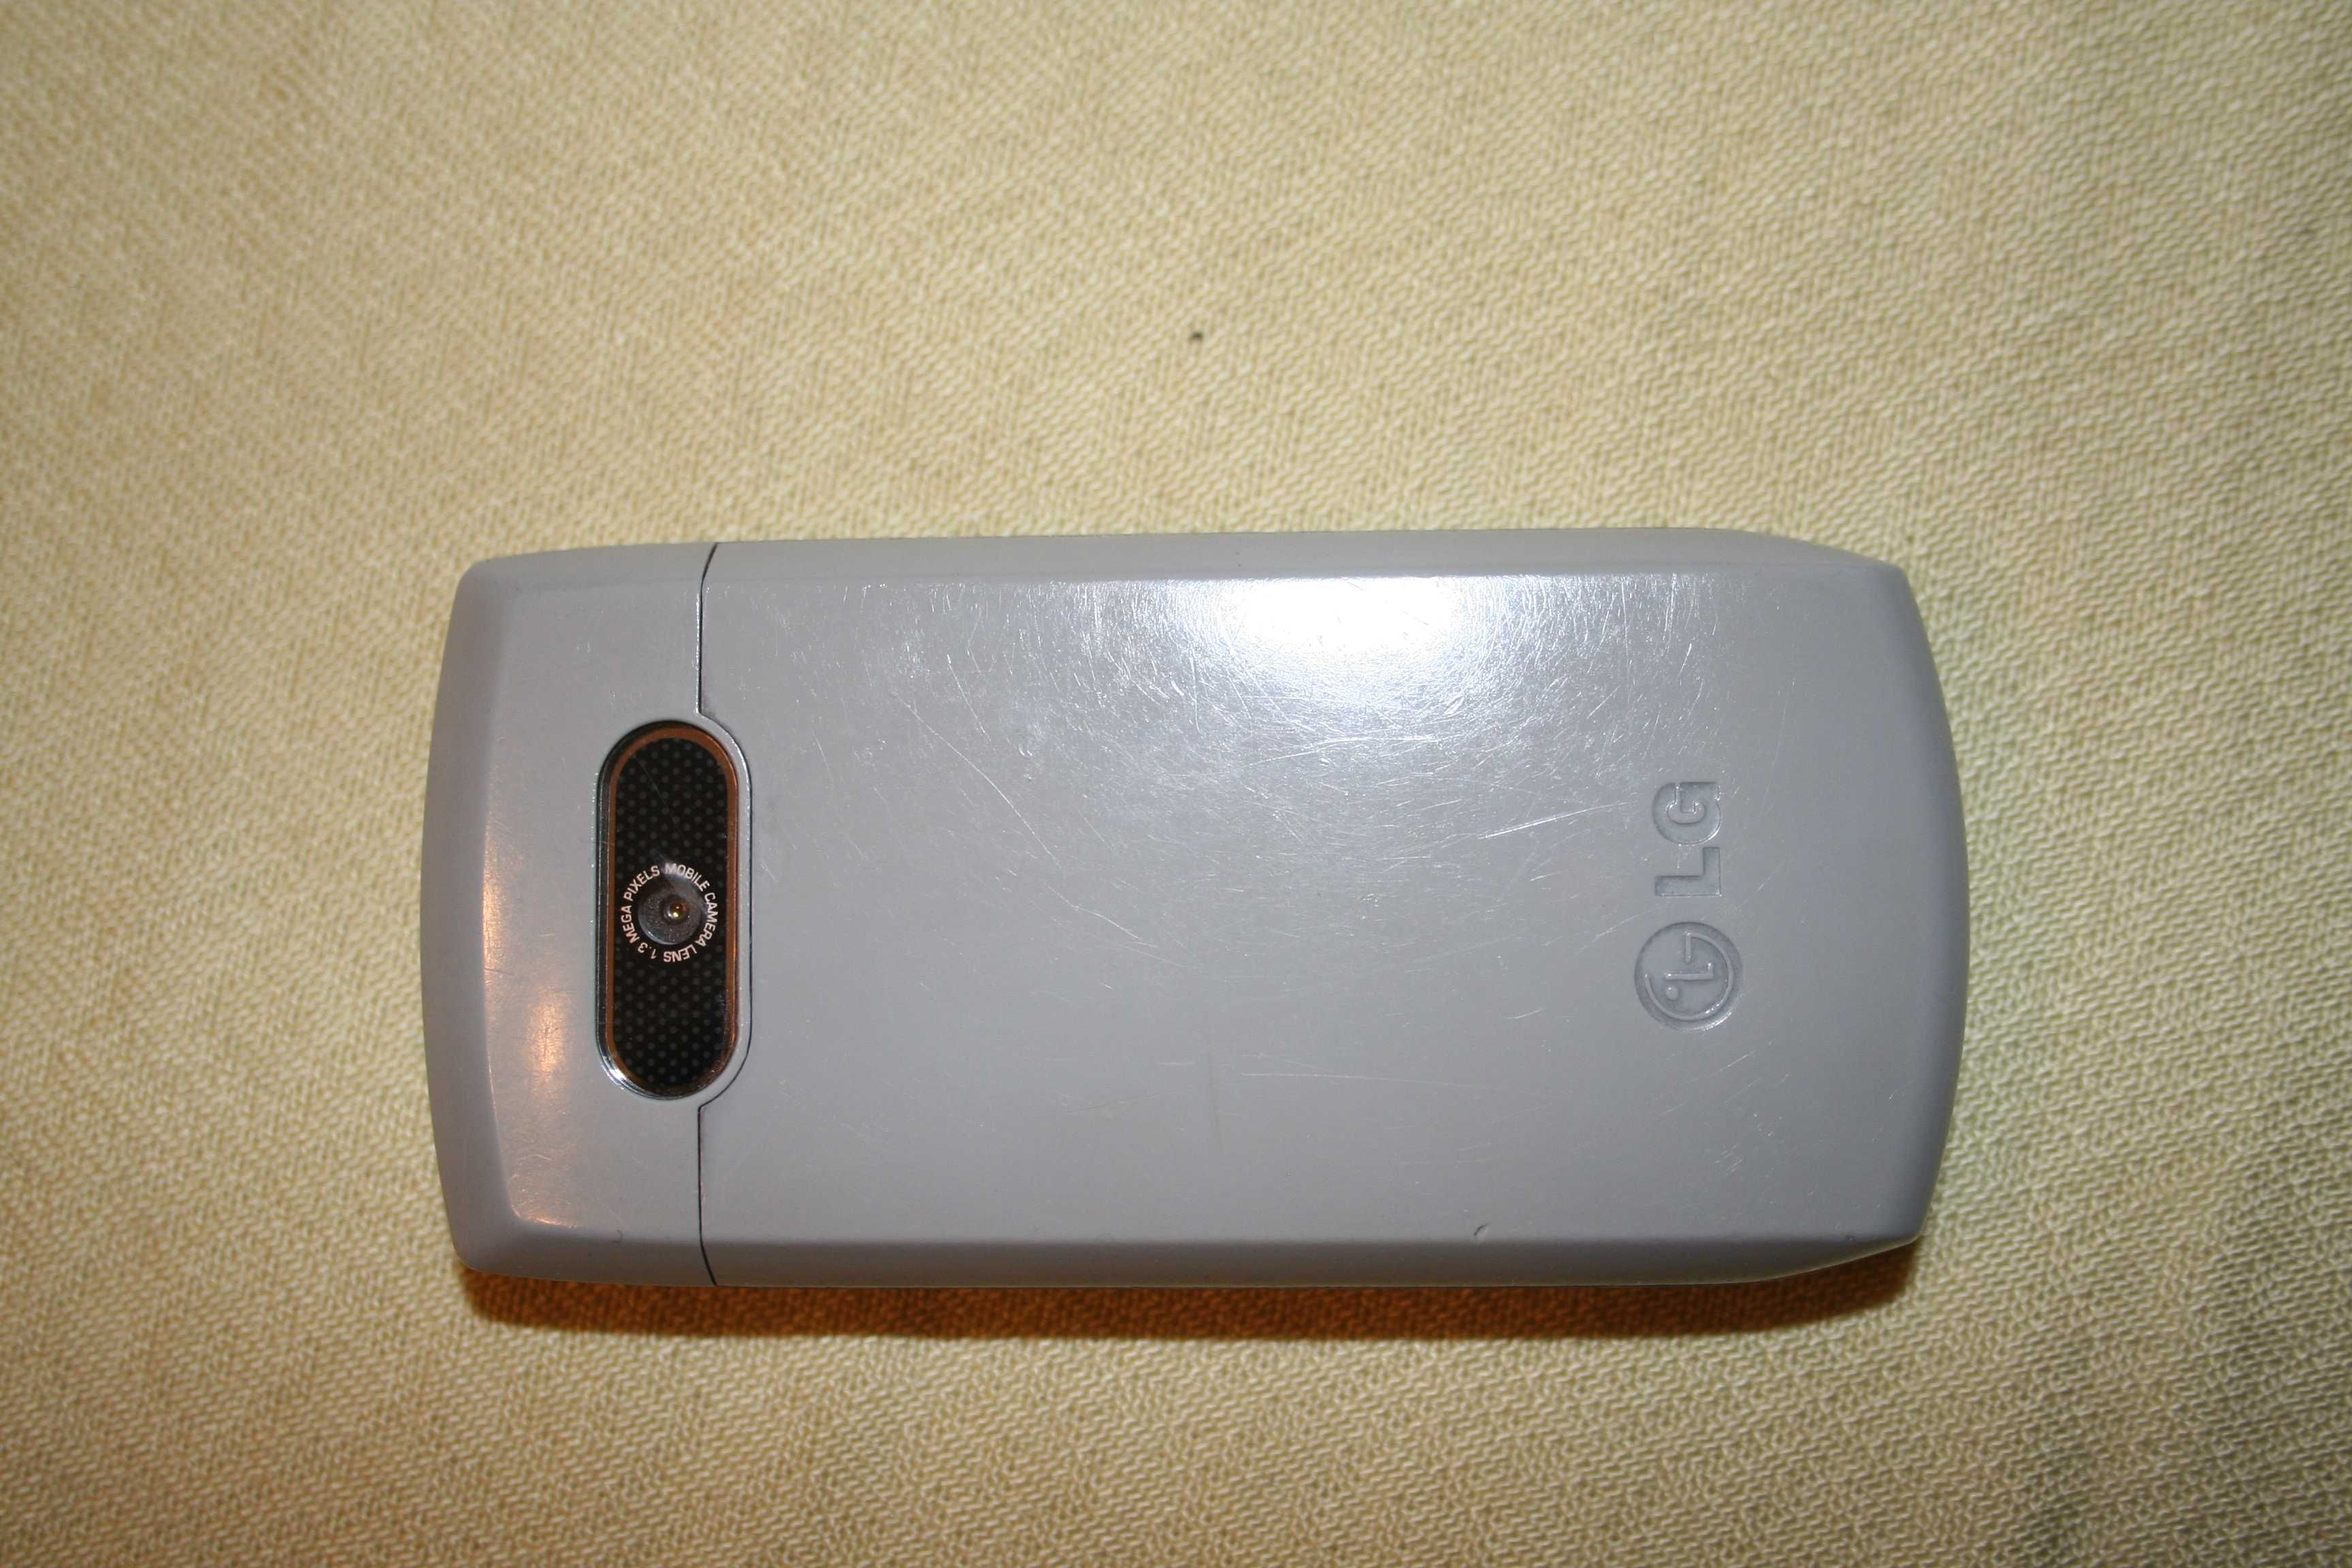 GSM LG използван